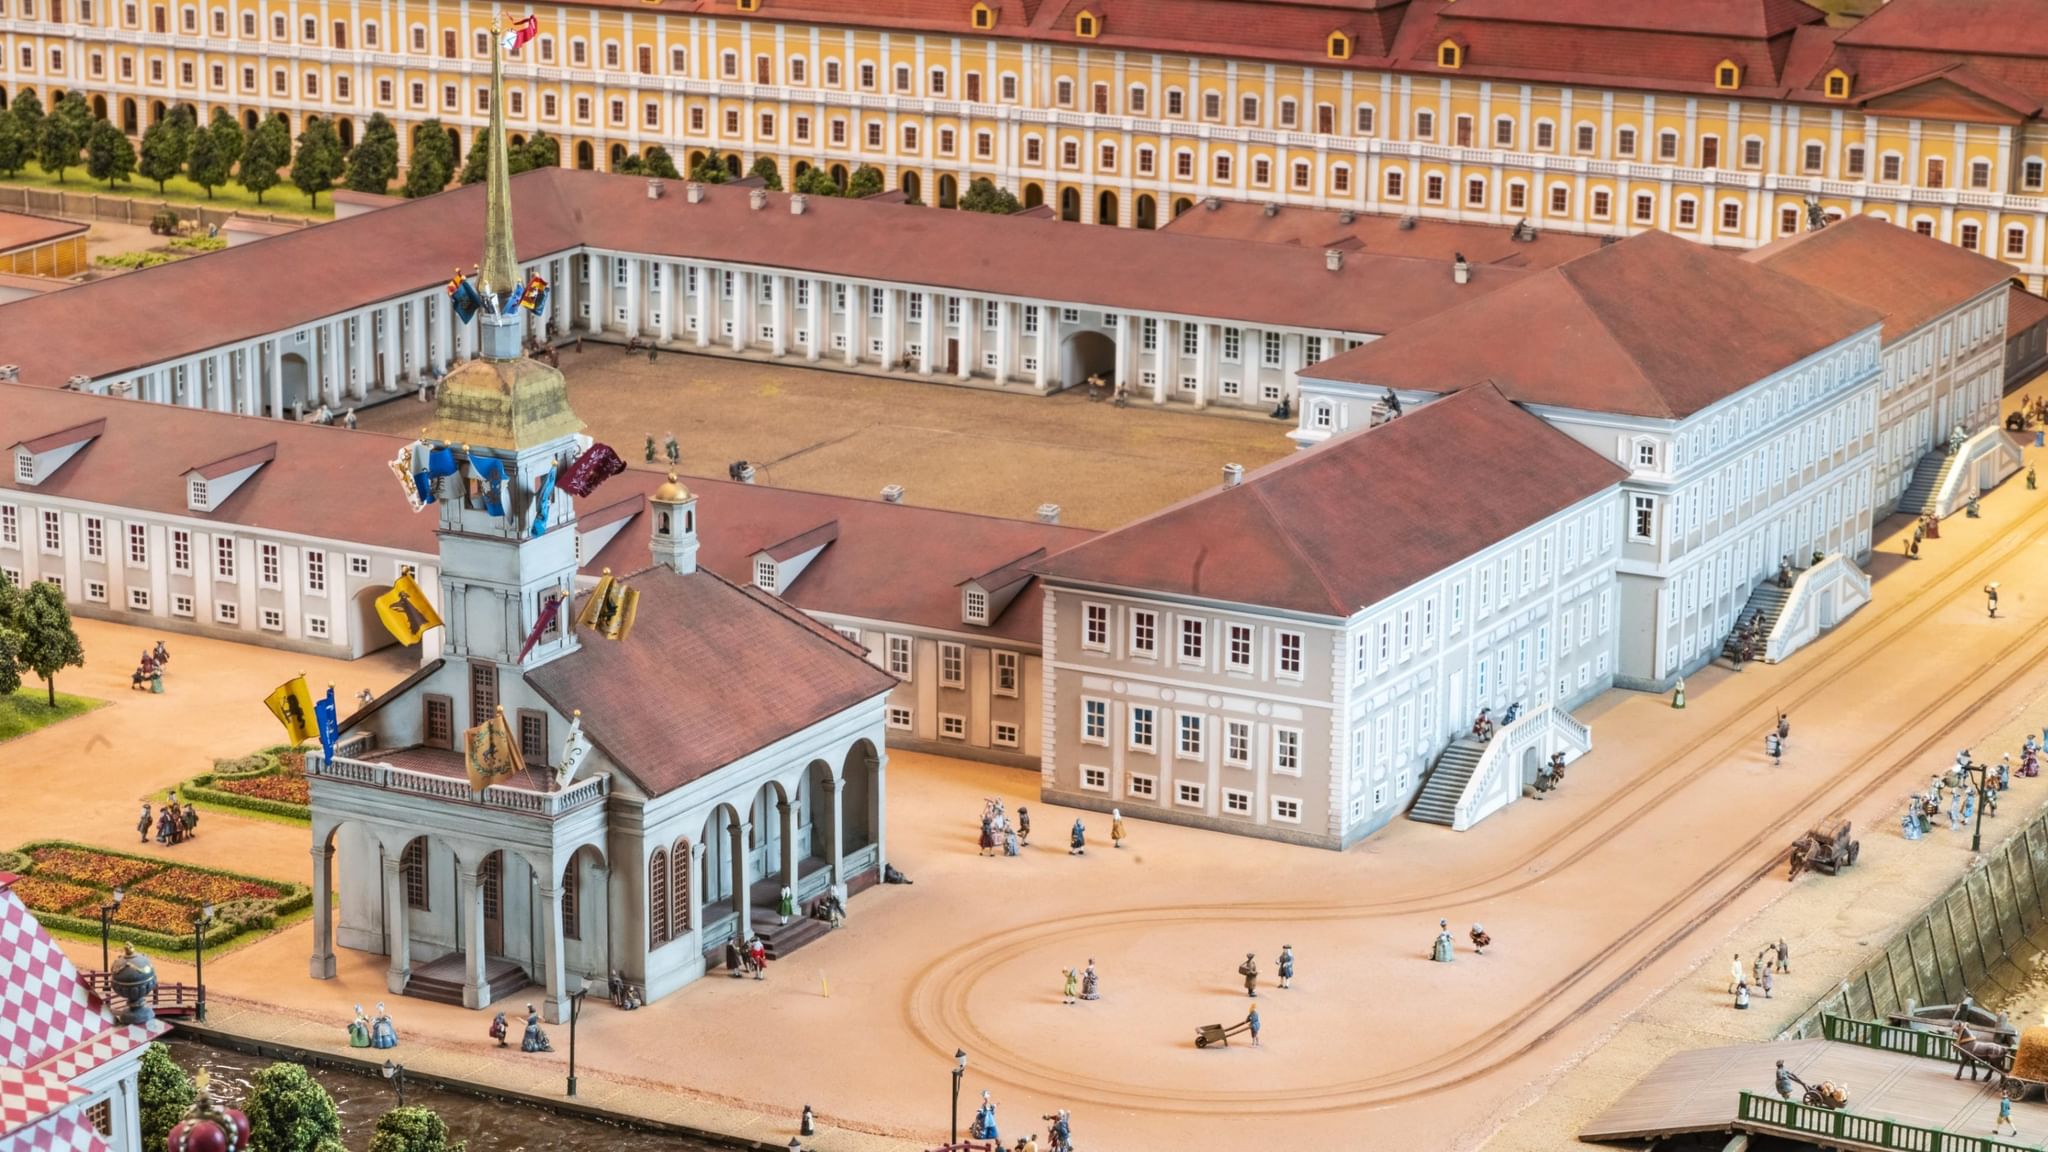 макет санкт петербурга в миниатюре на адмиралтейской